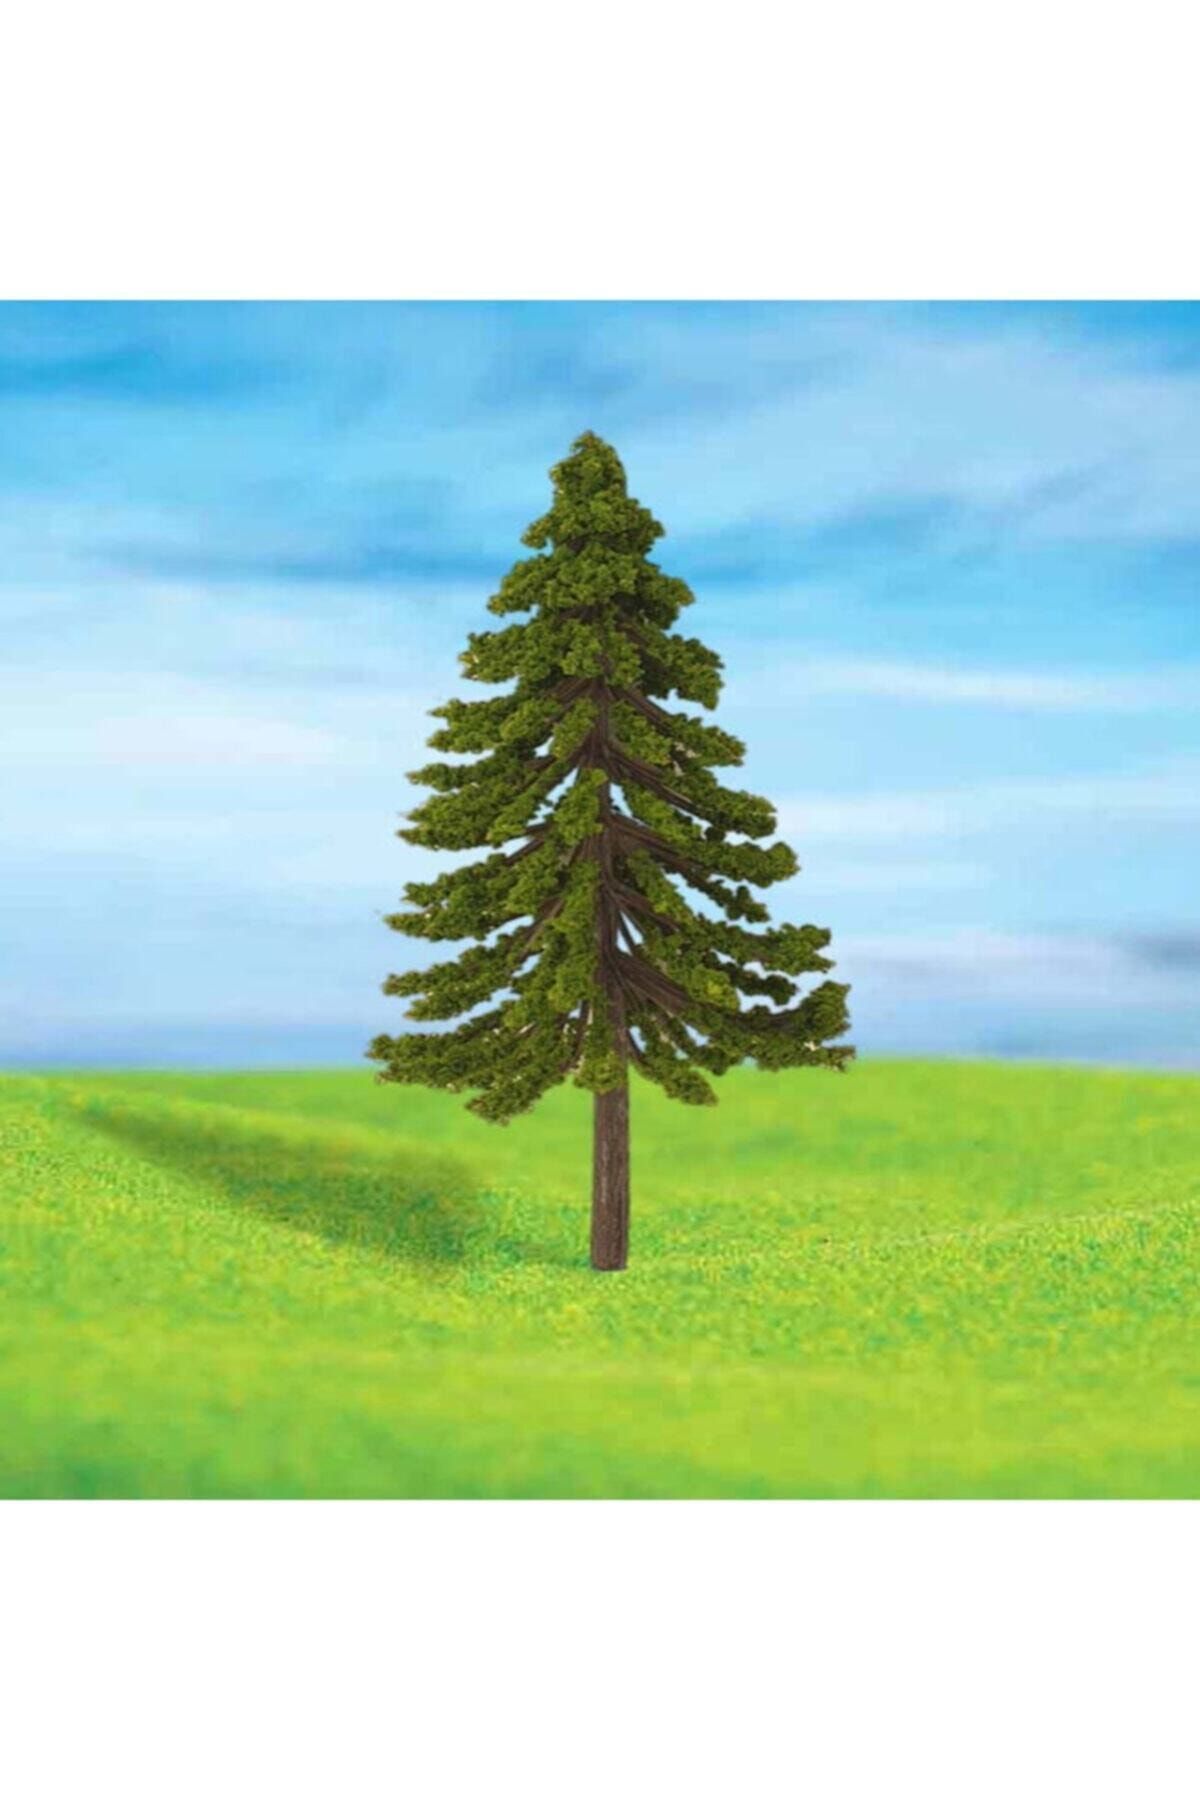 Jordania Eshel 5 cm. 4'lü Çam Ağacı